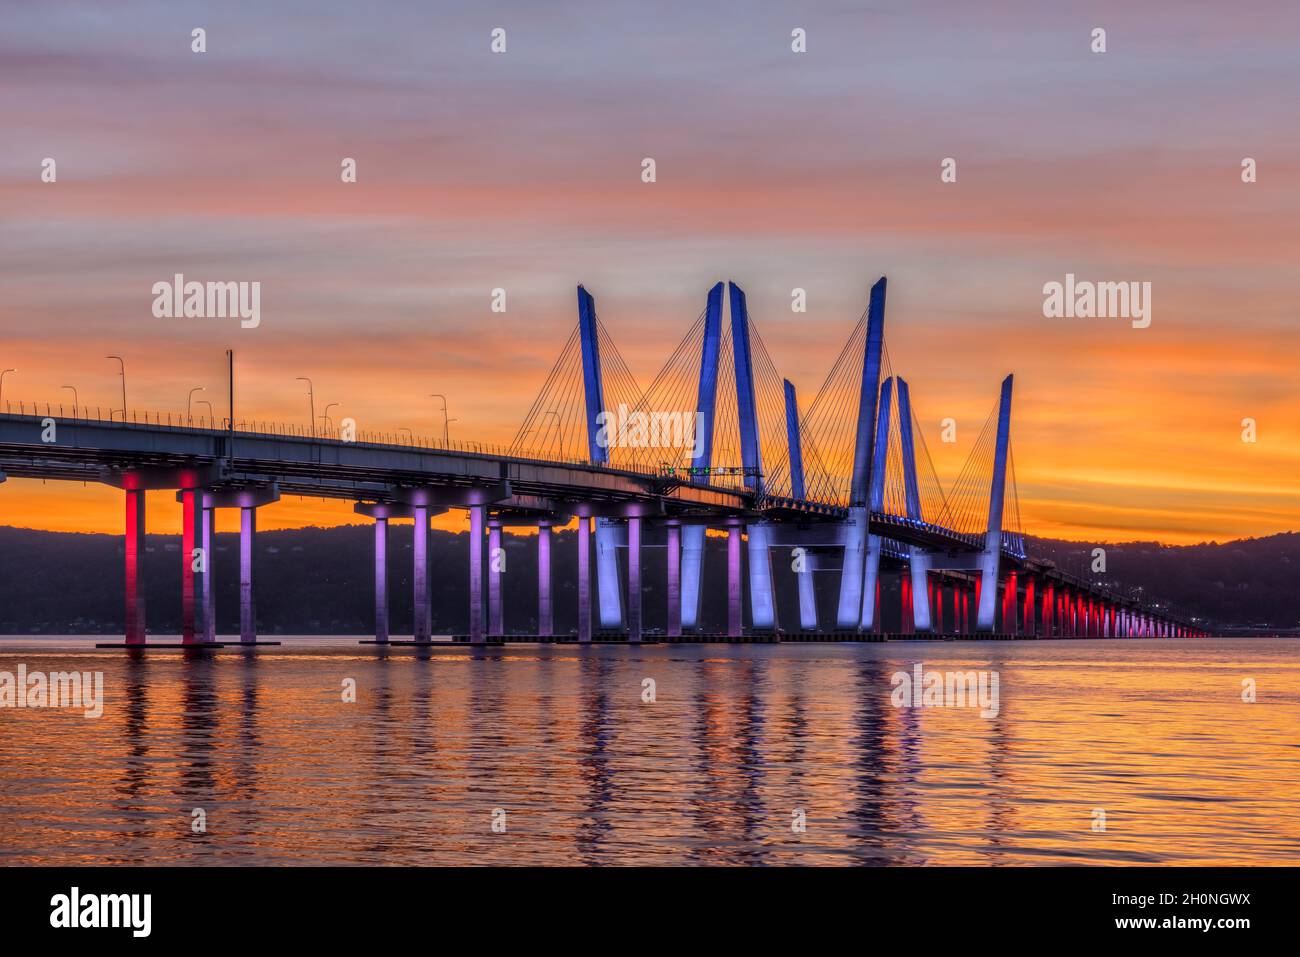 El Puente del Gobernador Mario M. Cuomo, iluminado en rojo, blanco y azul en reconocimiento al Día de Colón, abarca el río Hudson justo después de la puesta del sol. Foto de stock